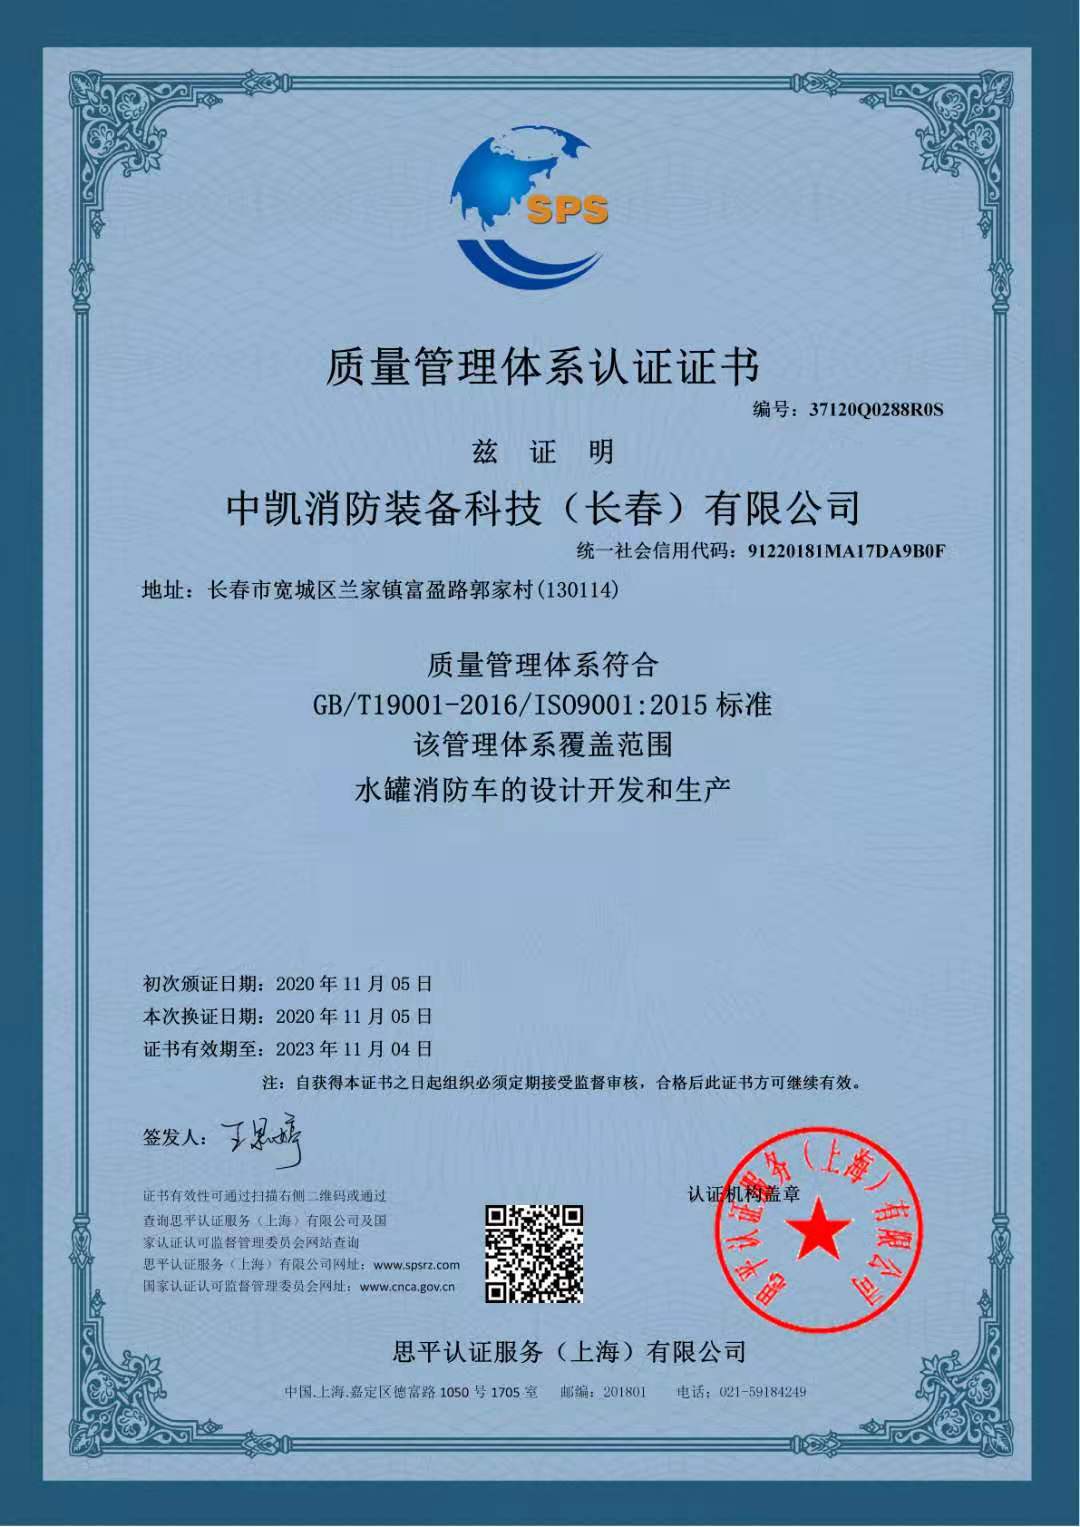 我公司消防车产品已通过ISO9000体系认证